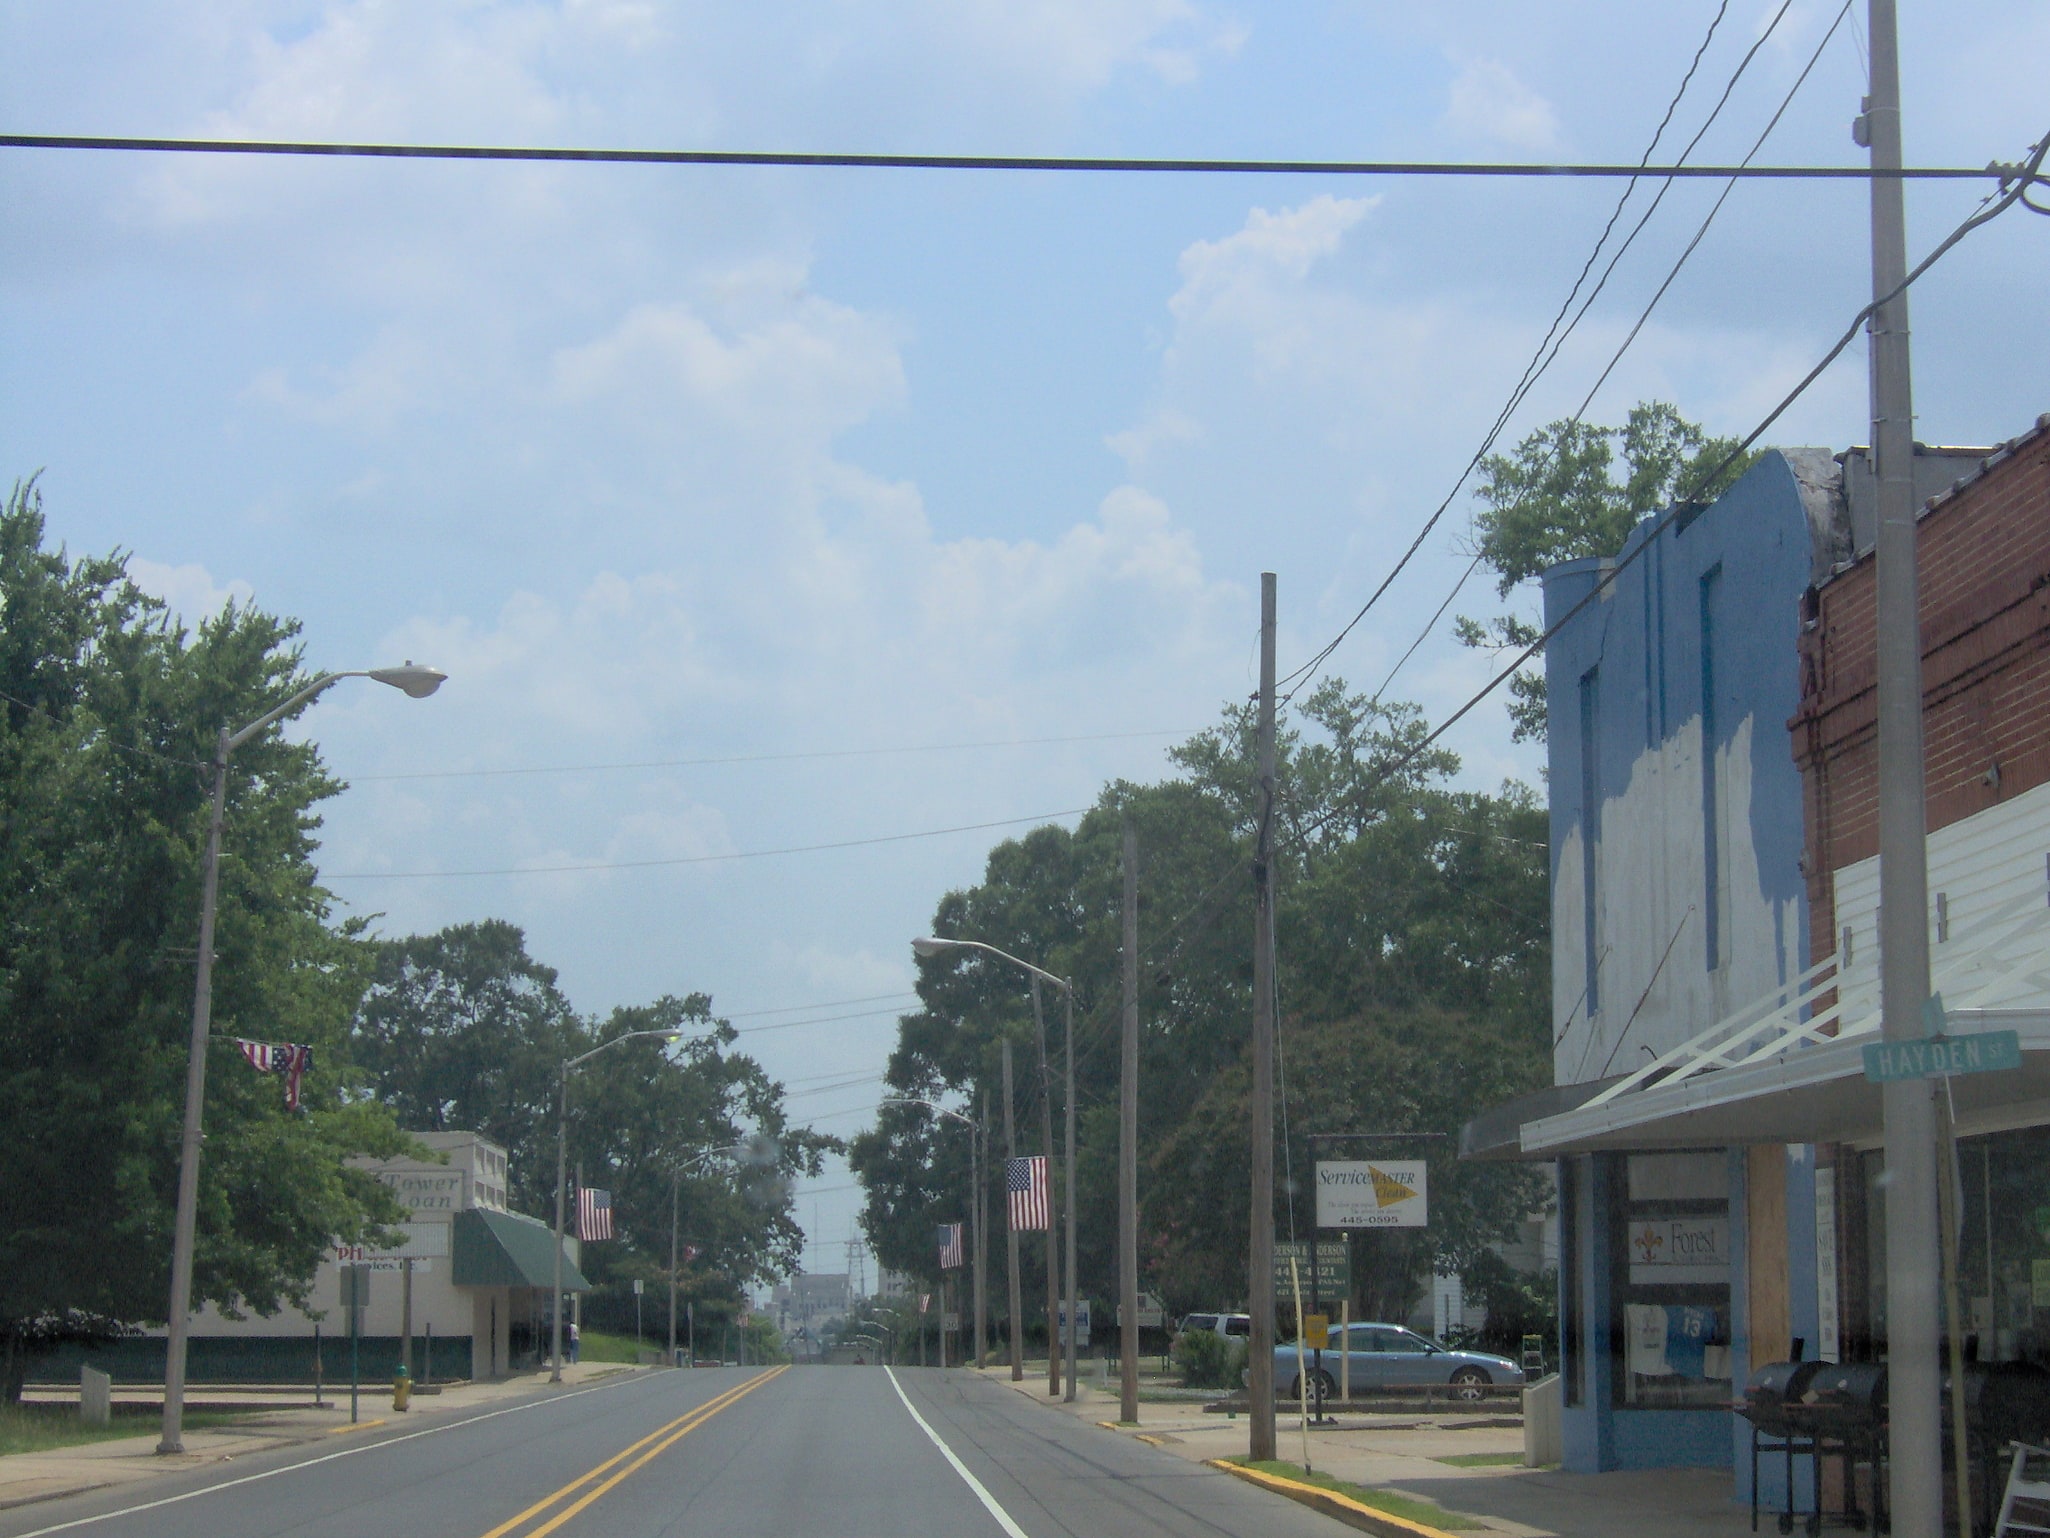 Pineville, Estados Unidos